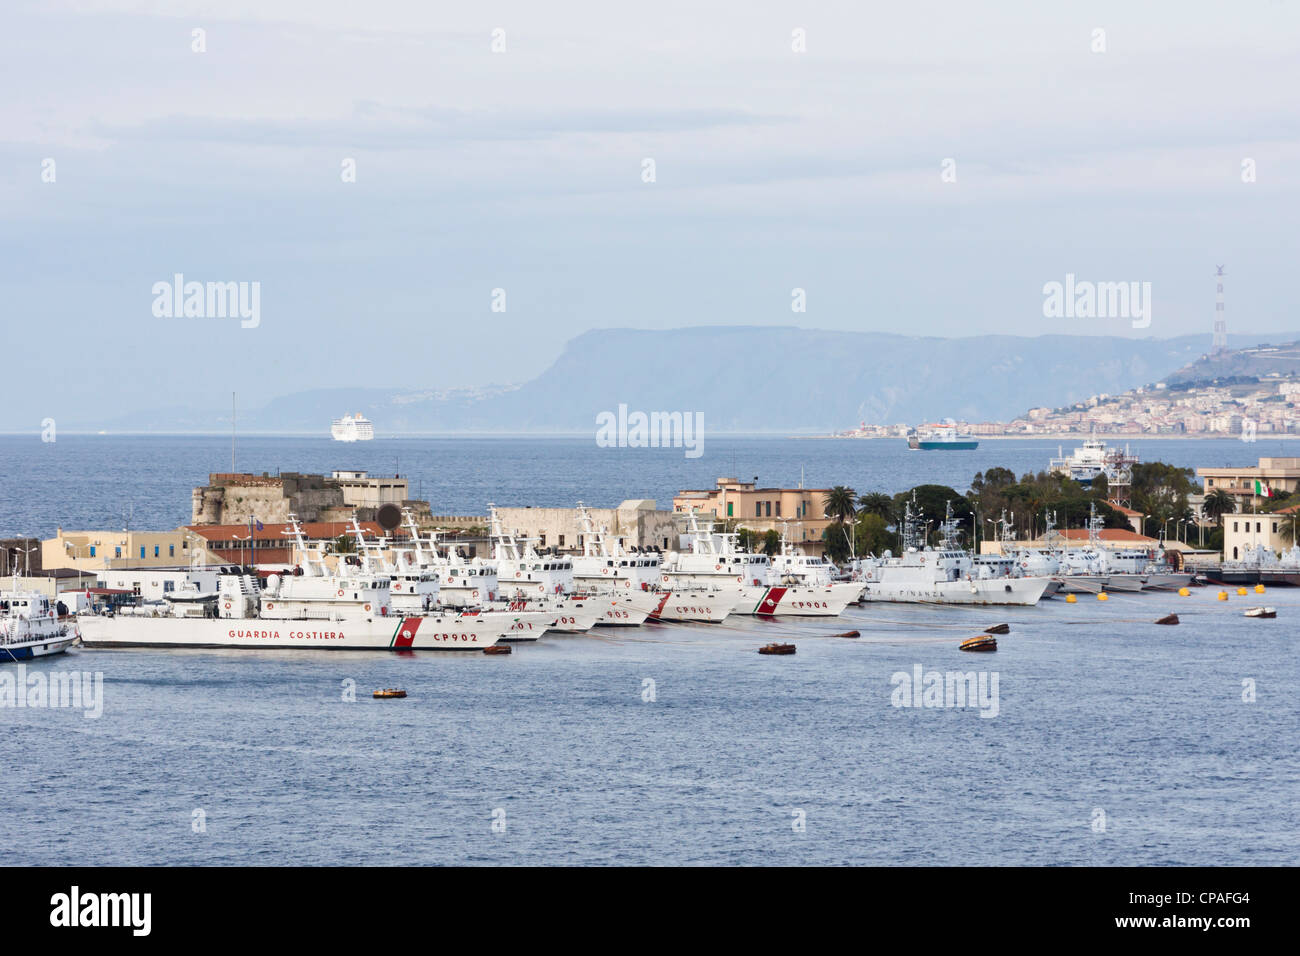 Messina, Sicilia, Italia - Dogane e navi guardacoste schierate nel porto. Alta velocità di incrociatori pronto per entrare in azione Foto Stock